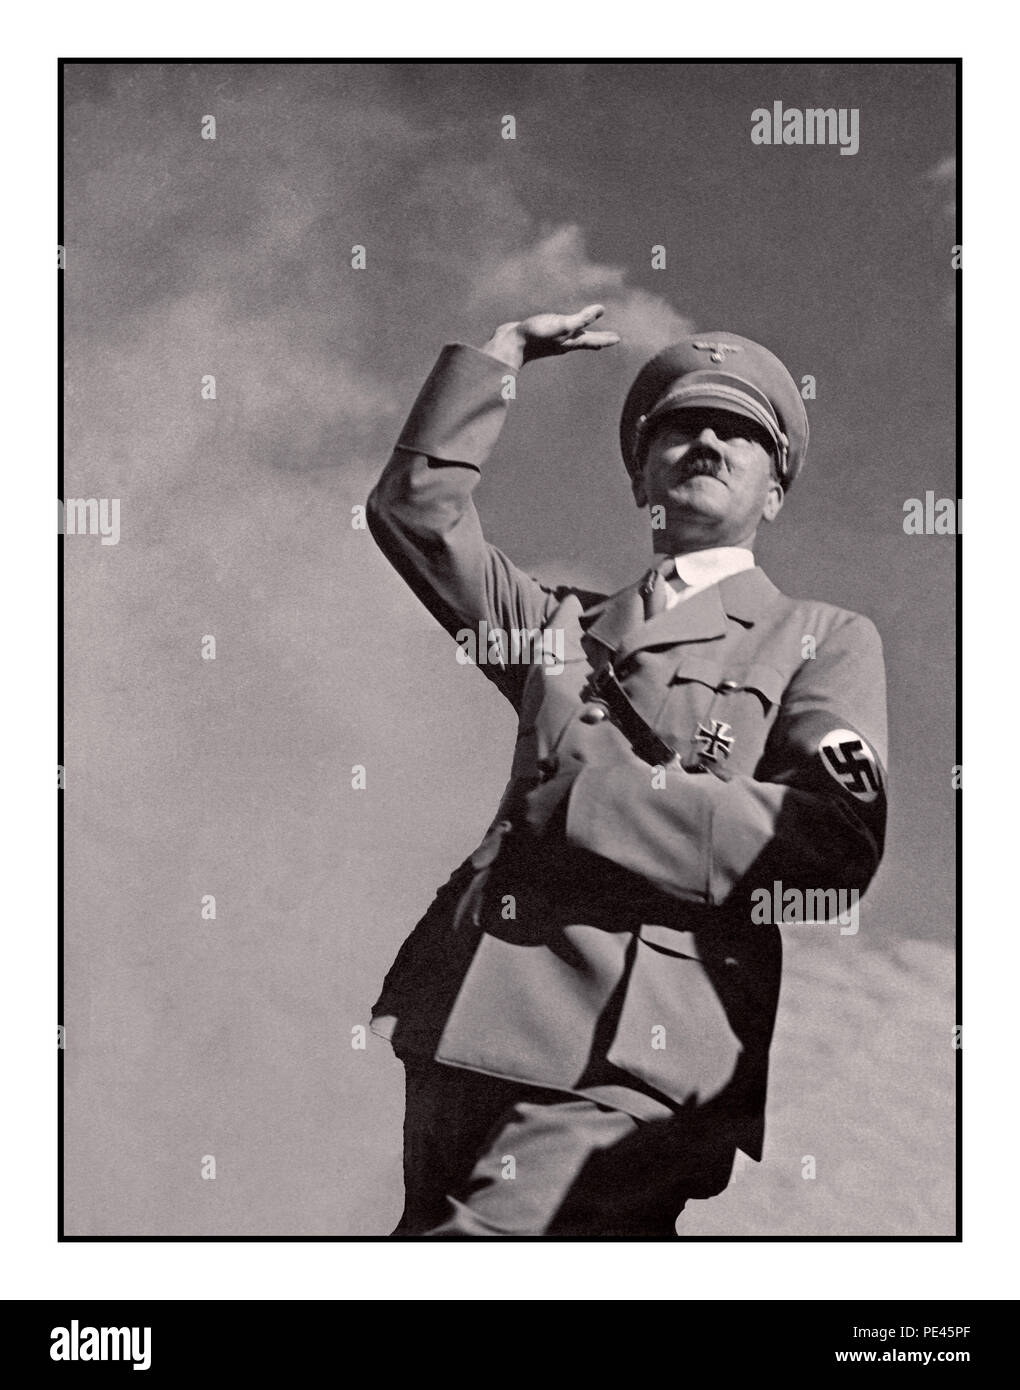 ADOLF HITLER SALUTE 1939 WW2 Deutsche Propaganda Bild von Adolf Hitler in Uniform tragen eines NS-Hakenkreuz armbinde Salutierte "Heil Hitler" zu einer Masse Low Angle View mit Himmel Hintergrund Stockfoto